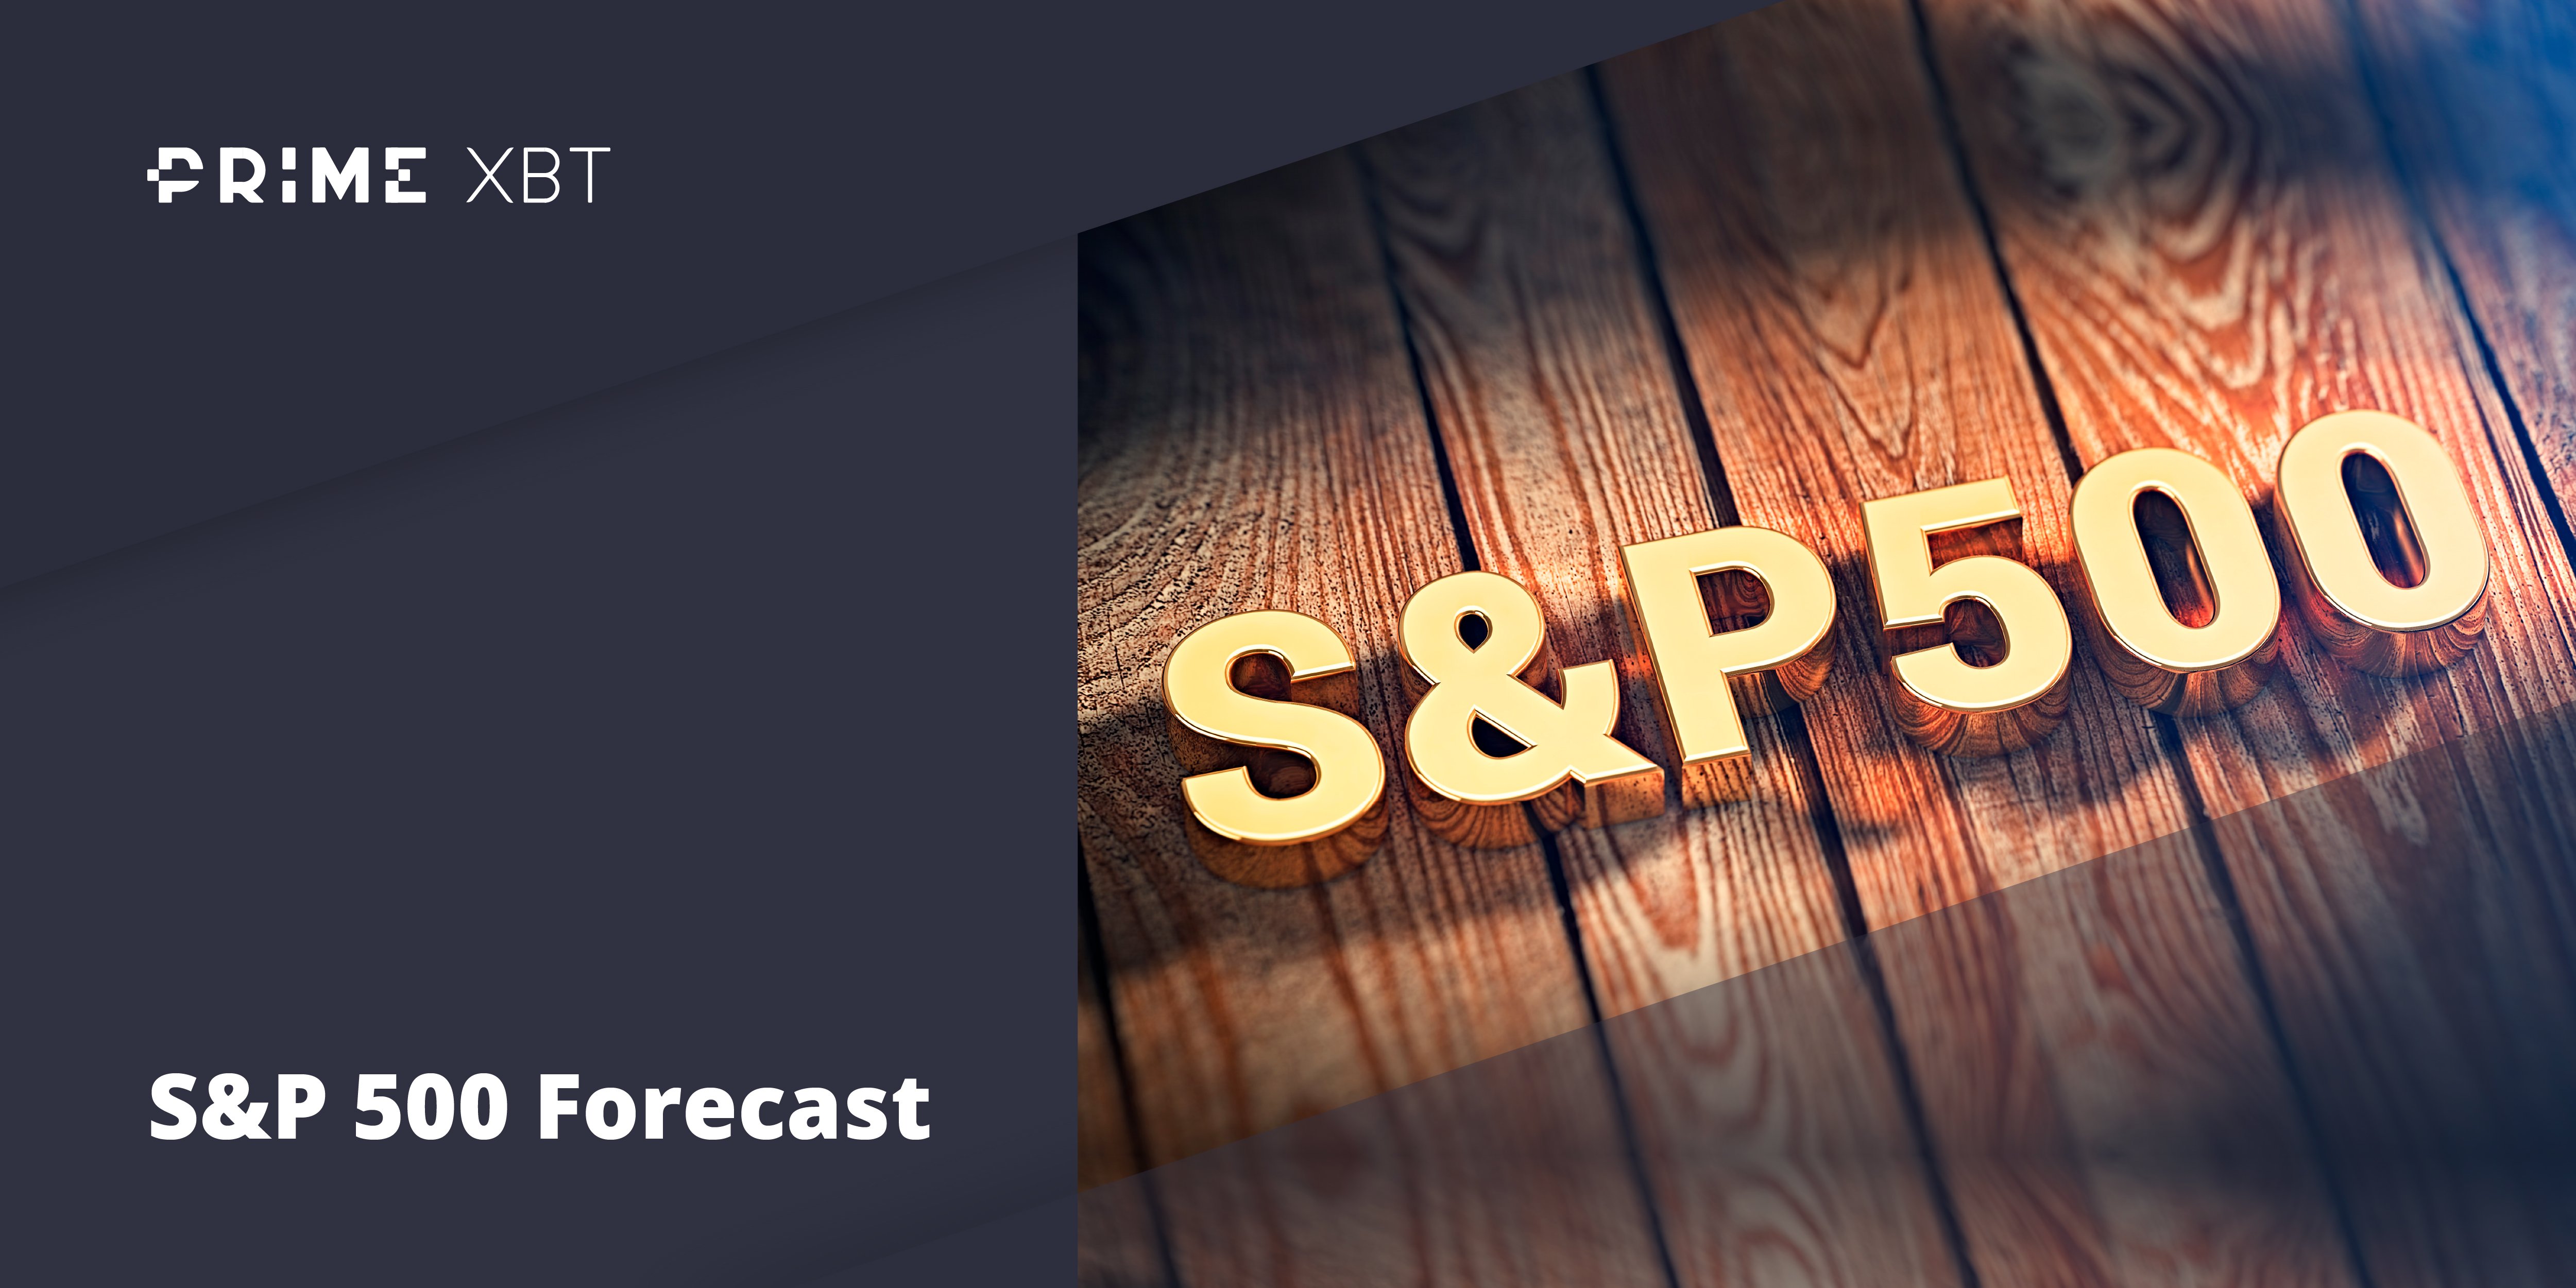 S&P 500 (SPX) Forecast for 2022, 2023, 20252030 PrimeXBT